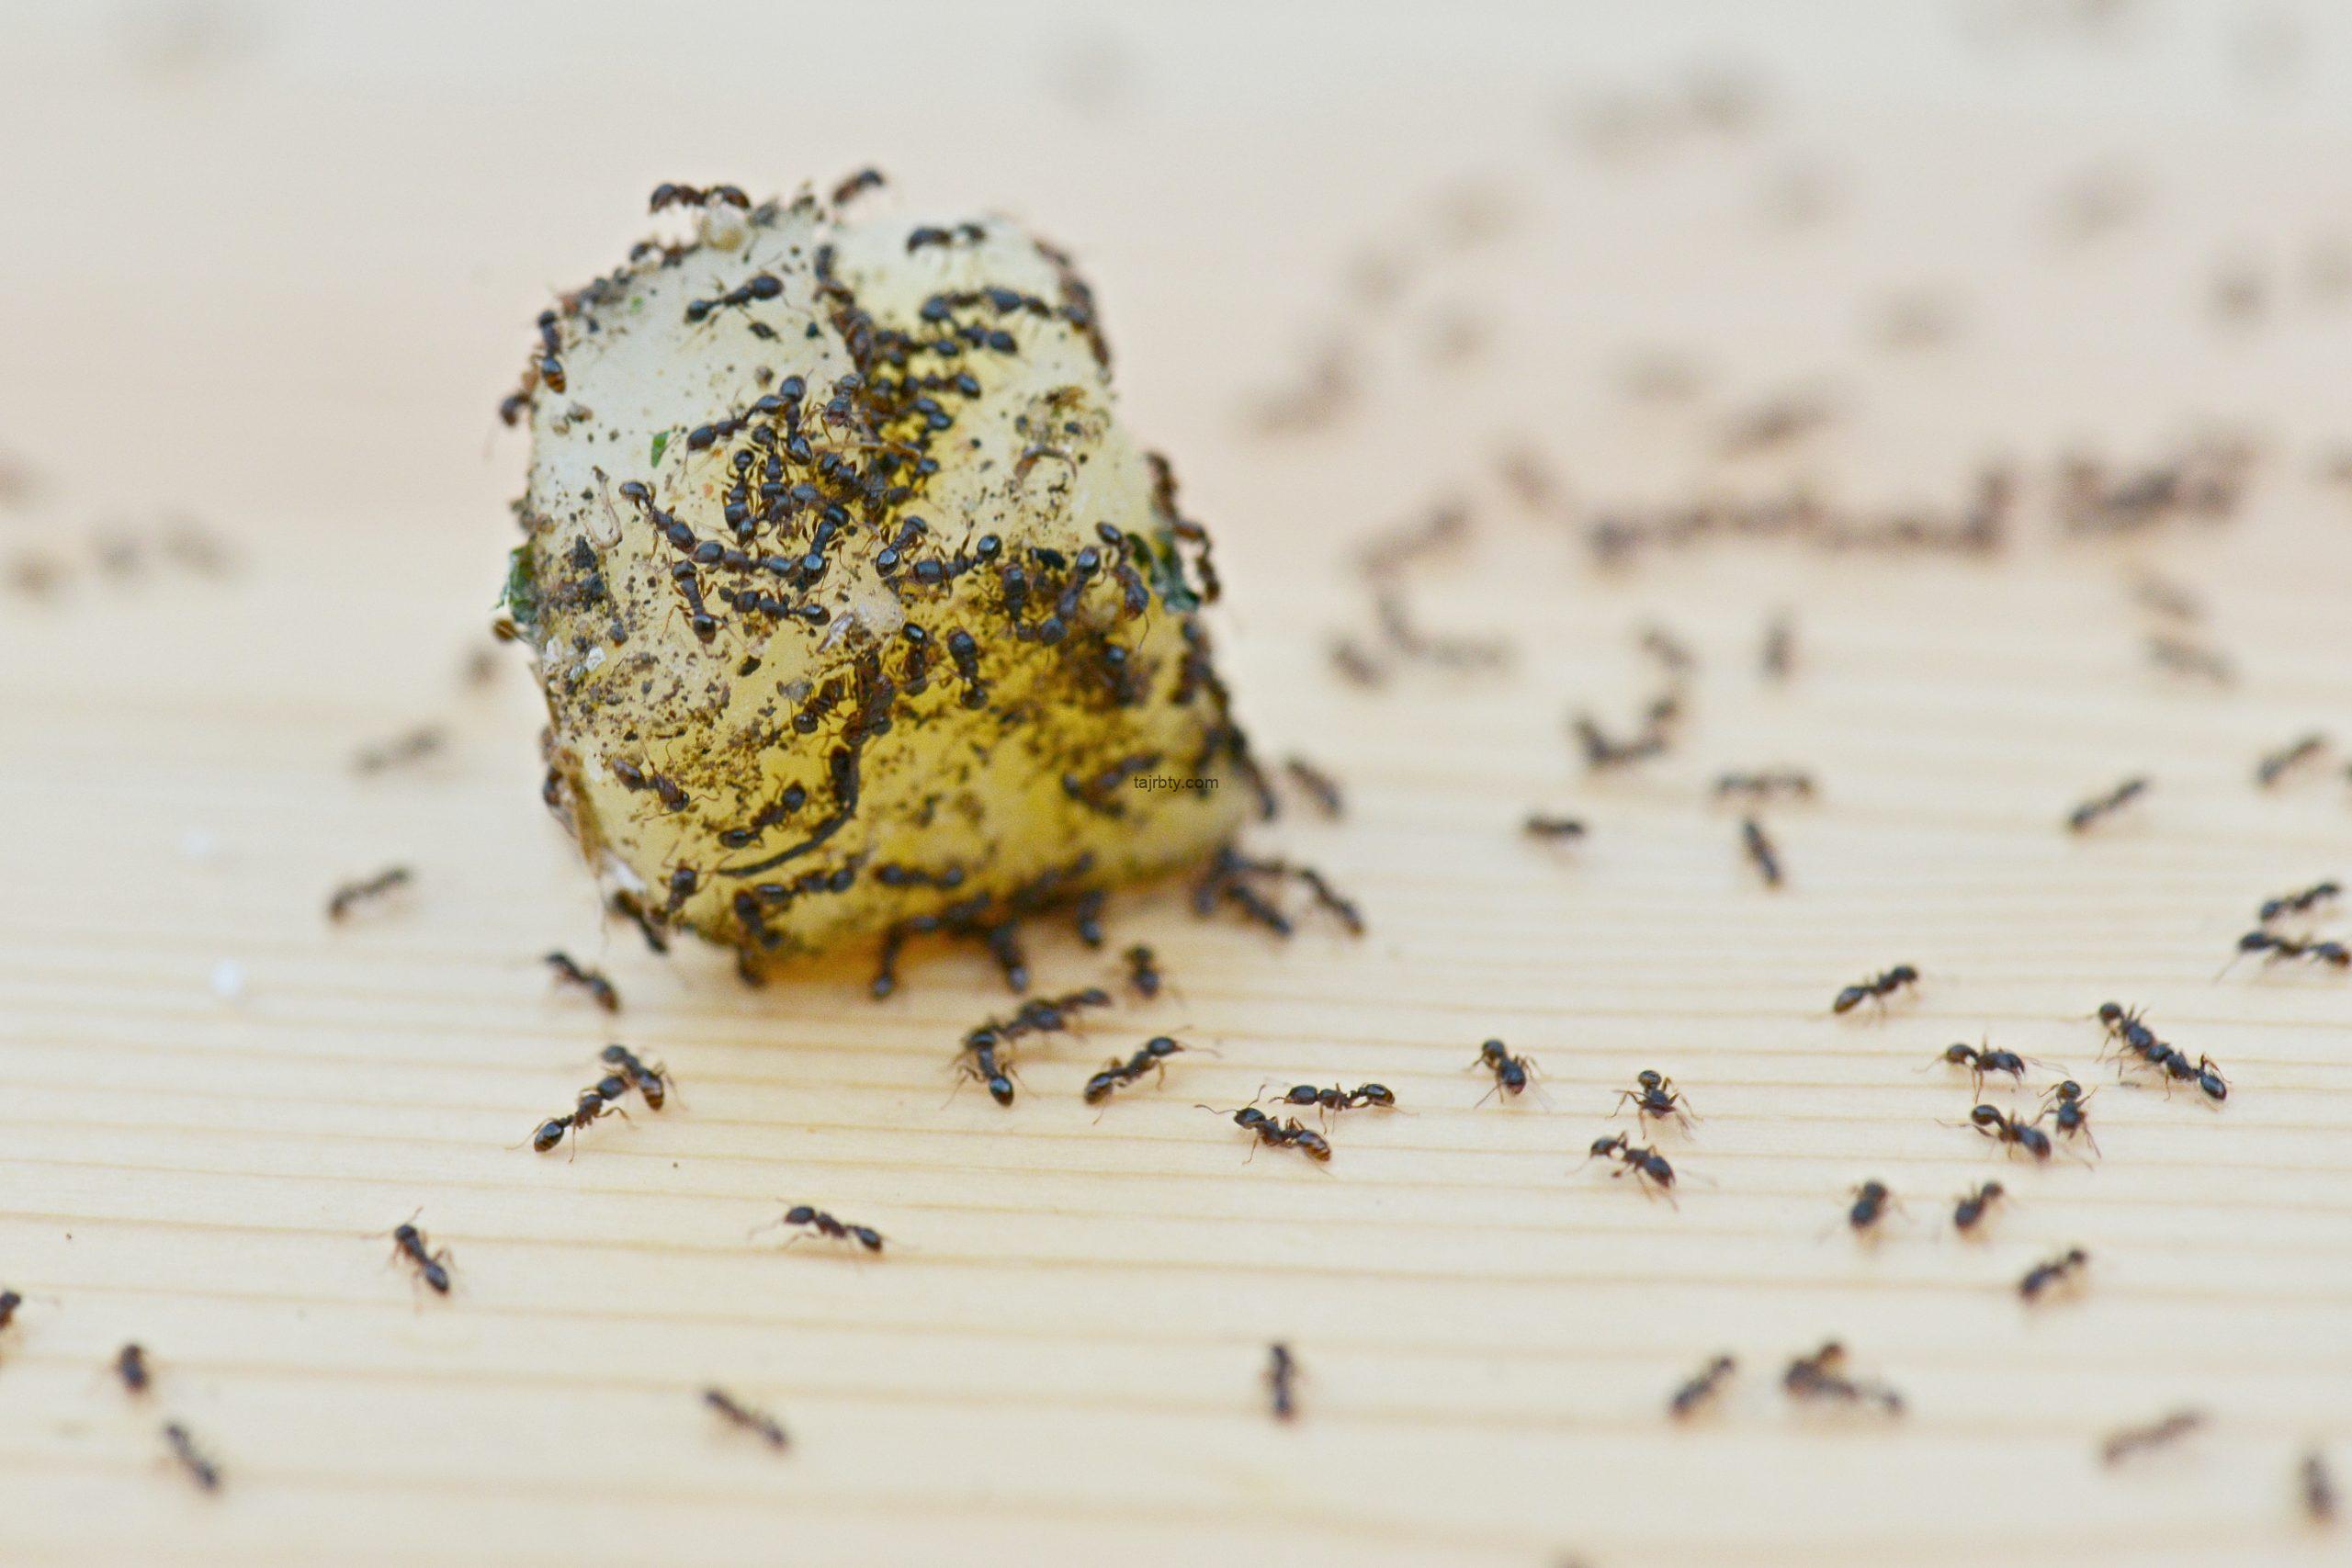  تجارب التخلص من النمل